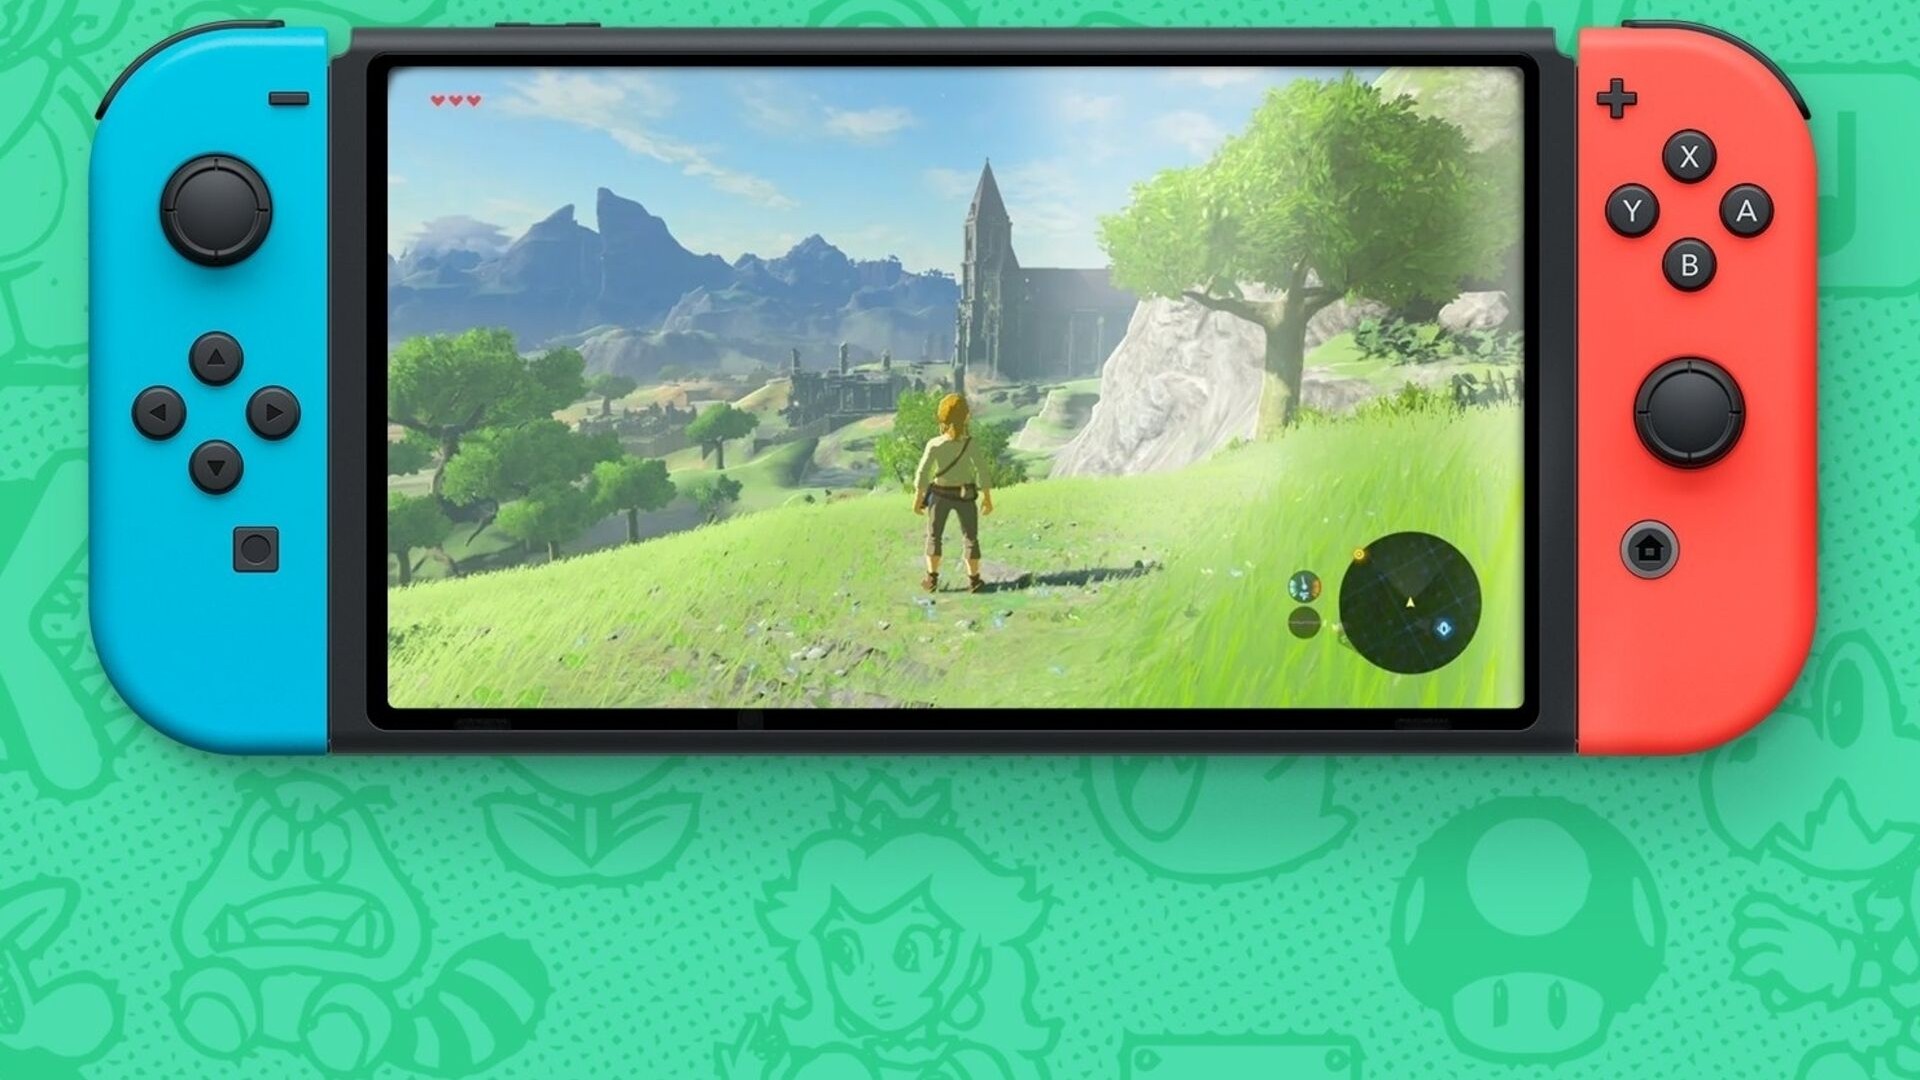 Novo vídeo do Nintendo Switch exibe Zelda e outros jogos exclusivos